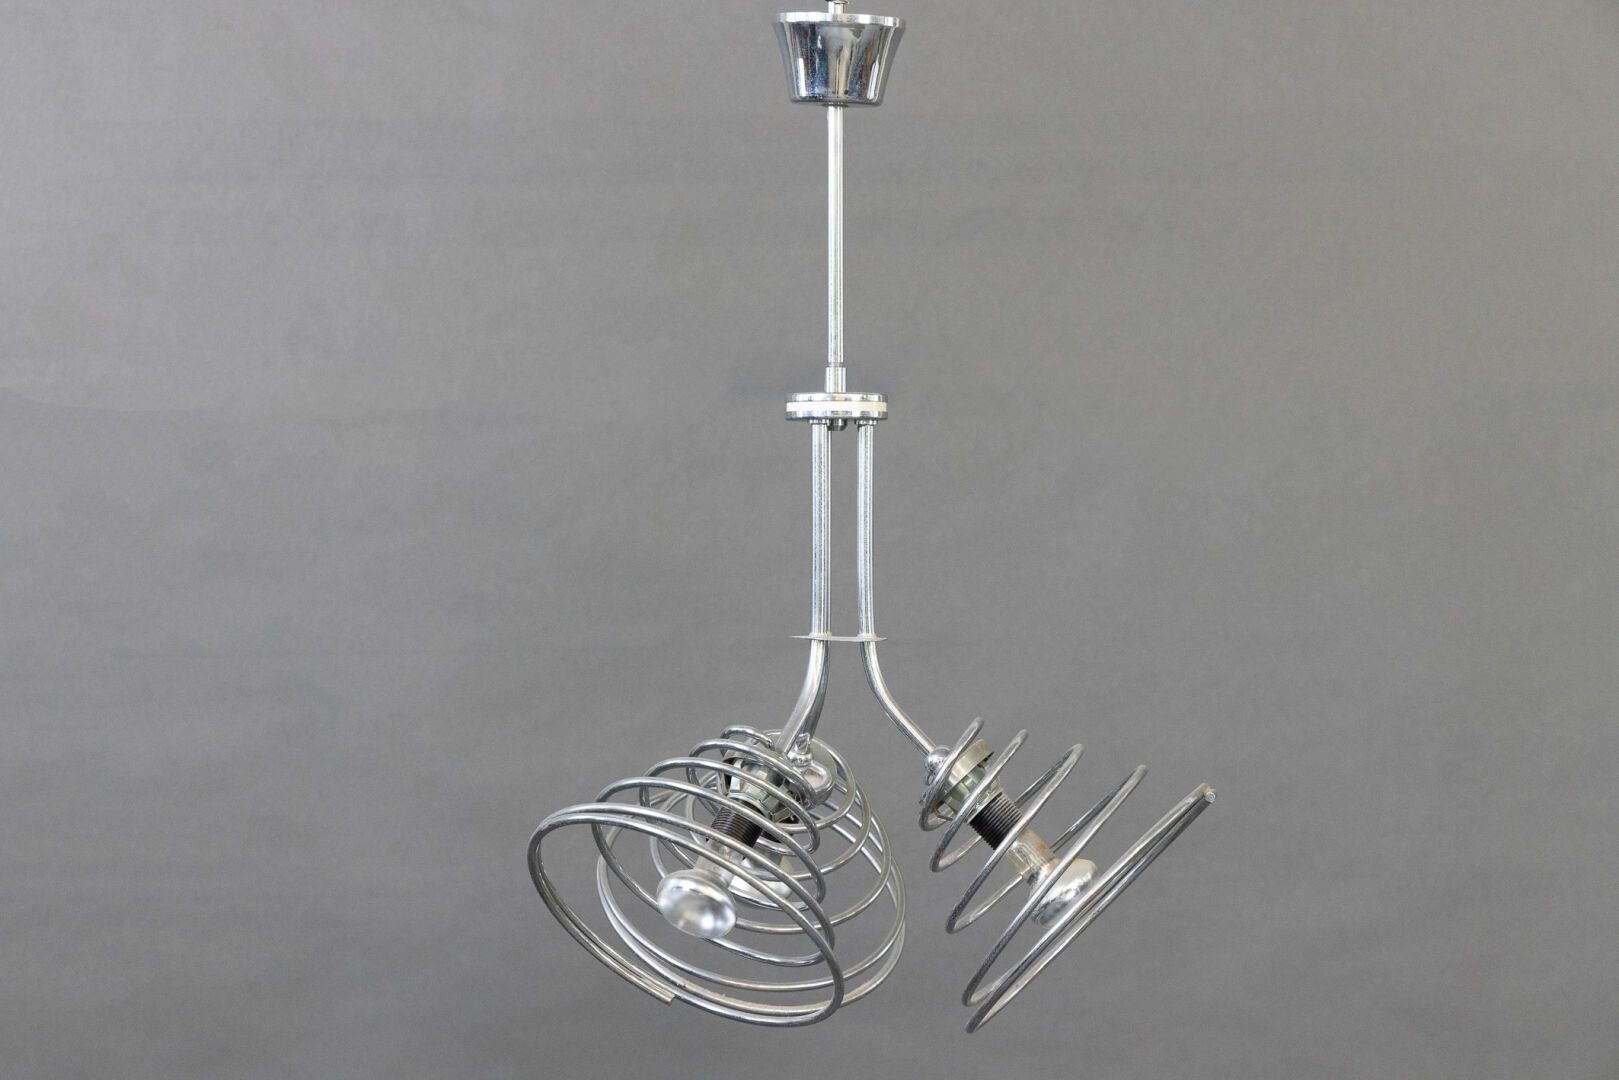 Null 镀铬金属悬挂灯，有三个倾斜的灯臂和弹簧式灯罩。 
约 1980 年制造。 
高度高度：67 厘米